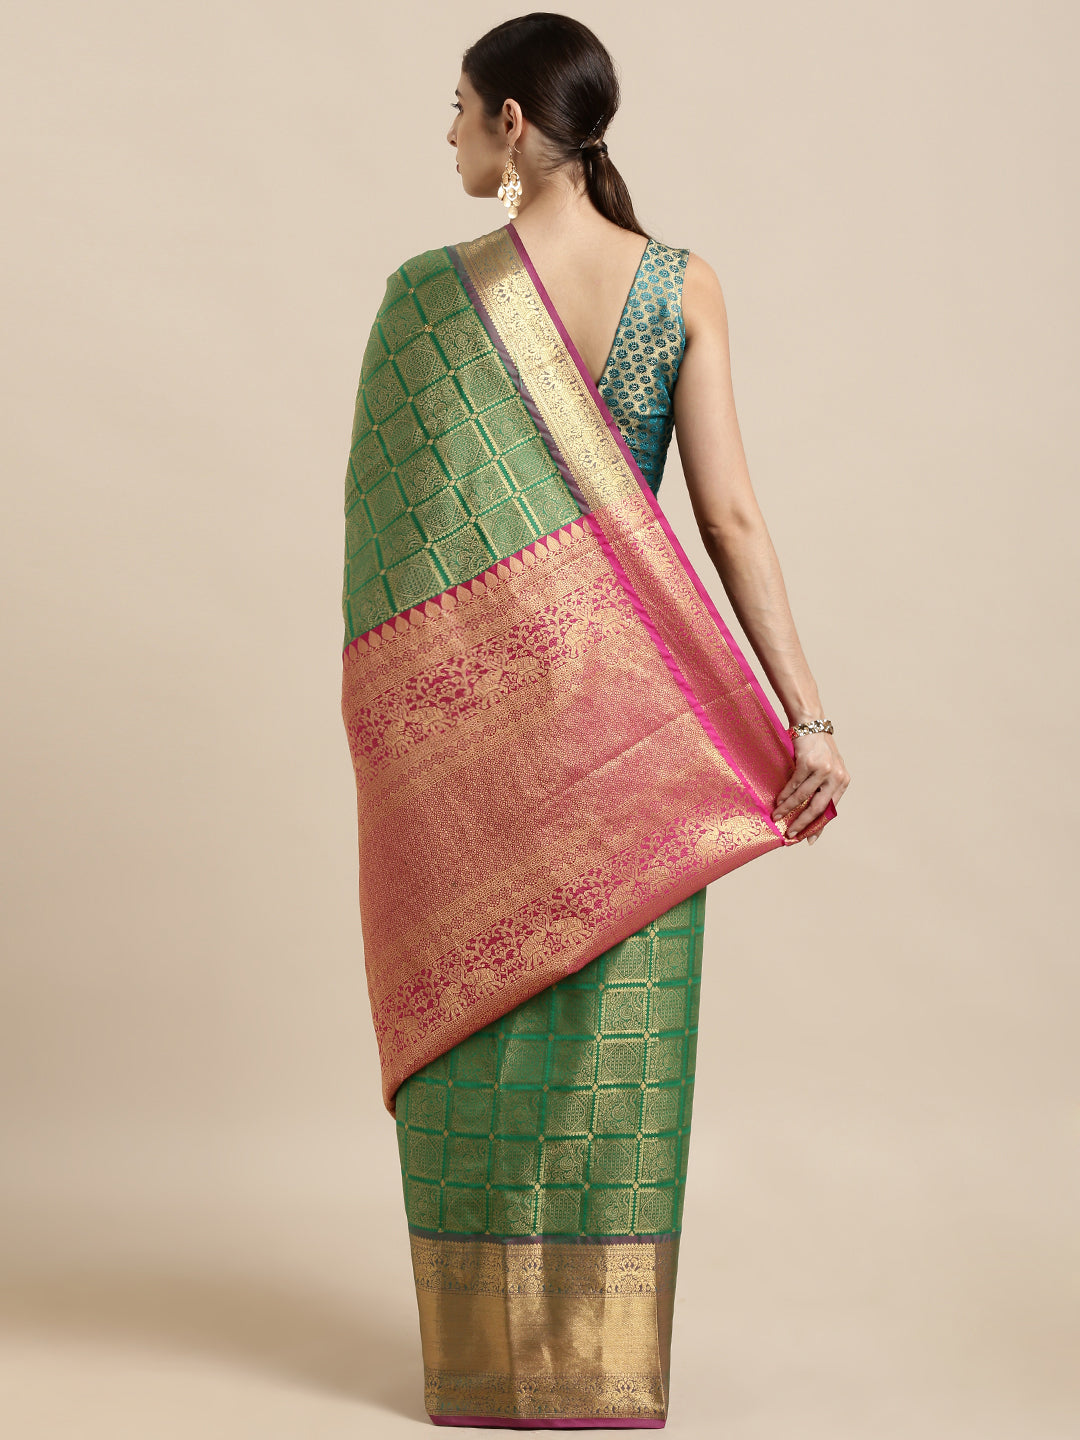  Green Colour Kanjivaram Silk Saree with Checked Print